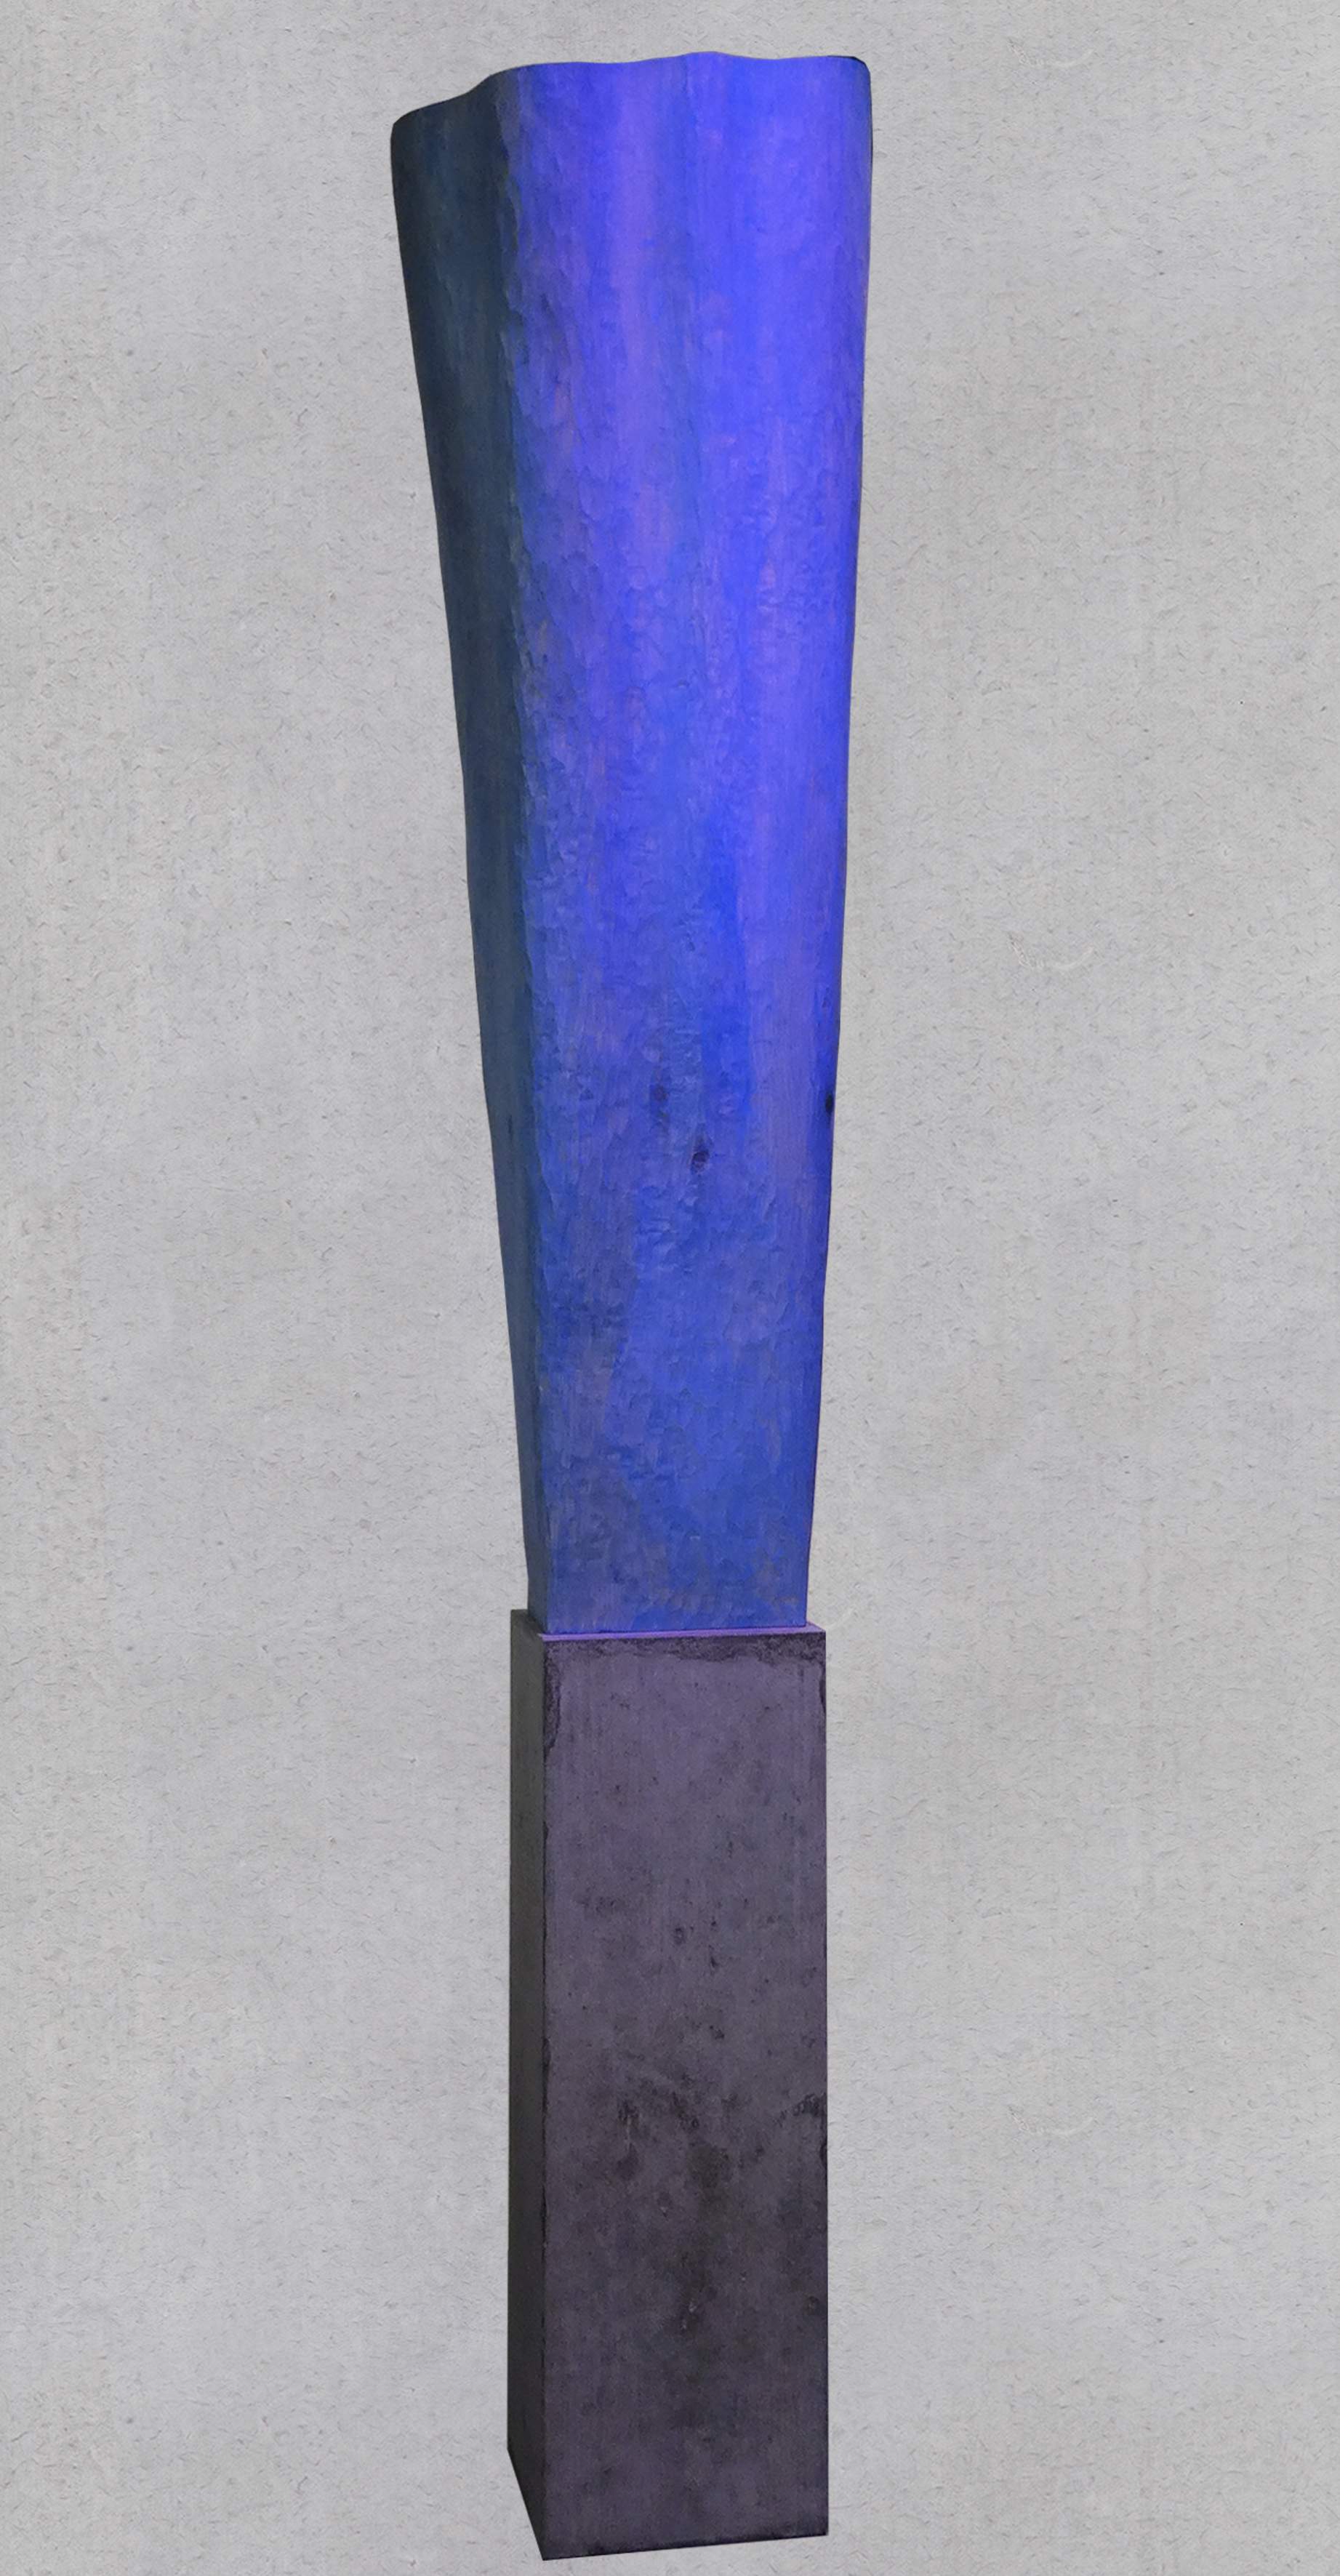 Skulptur Weymouths-Kiefer, Sockel Beton, Gesamthöhe 162 cm